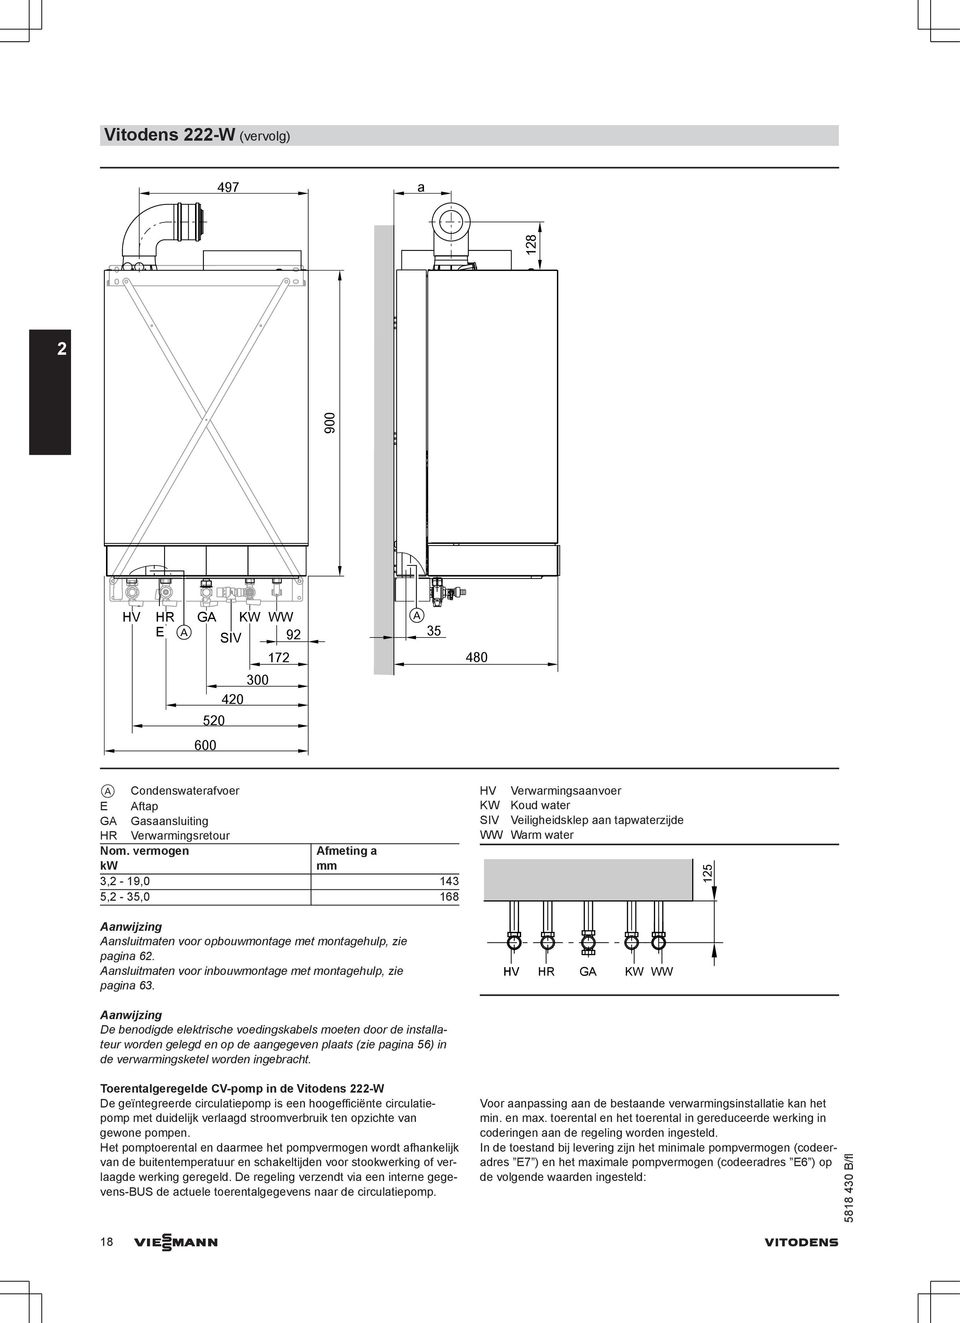 Aanwijzing De benodigde elektrische voedingskabels moeten door de installateur worden gelegd en op de aangegeven plaats (zie pagina 56) in de verwarmingsketel worden ingebracht.